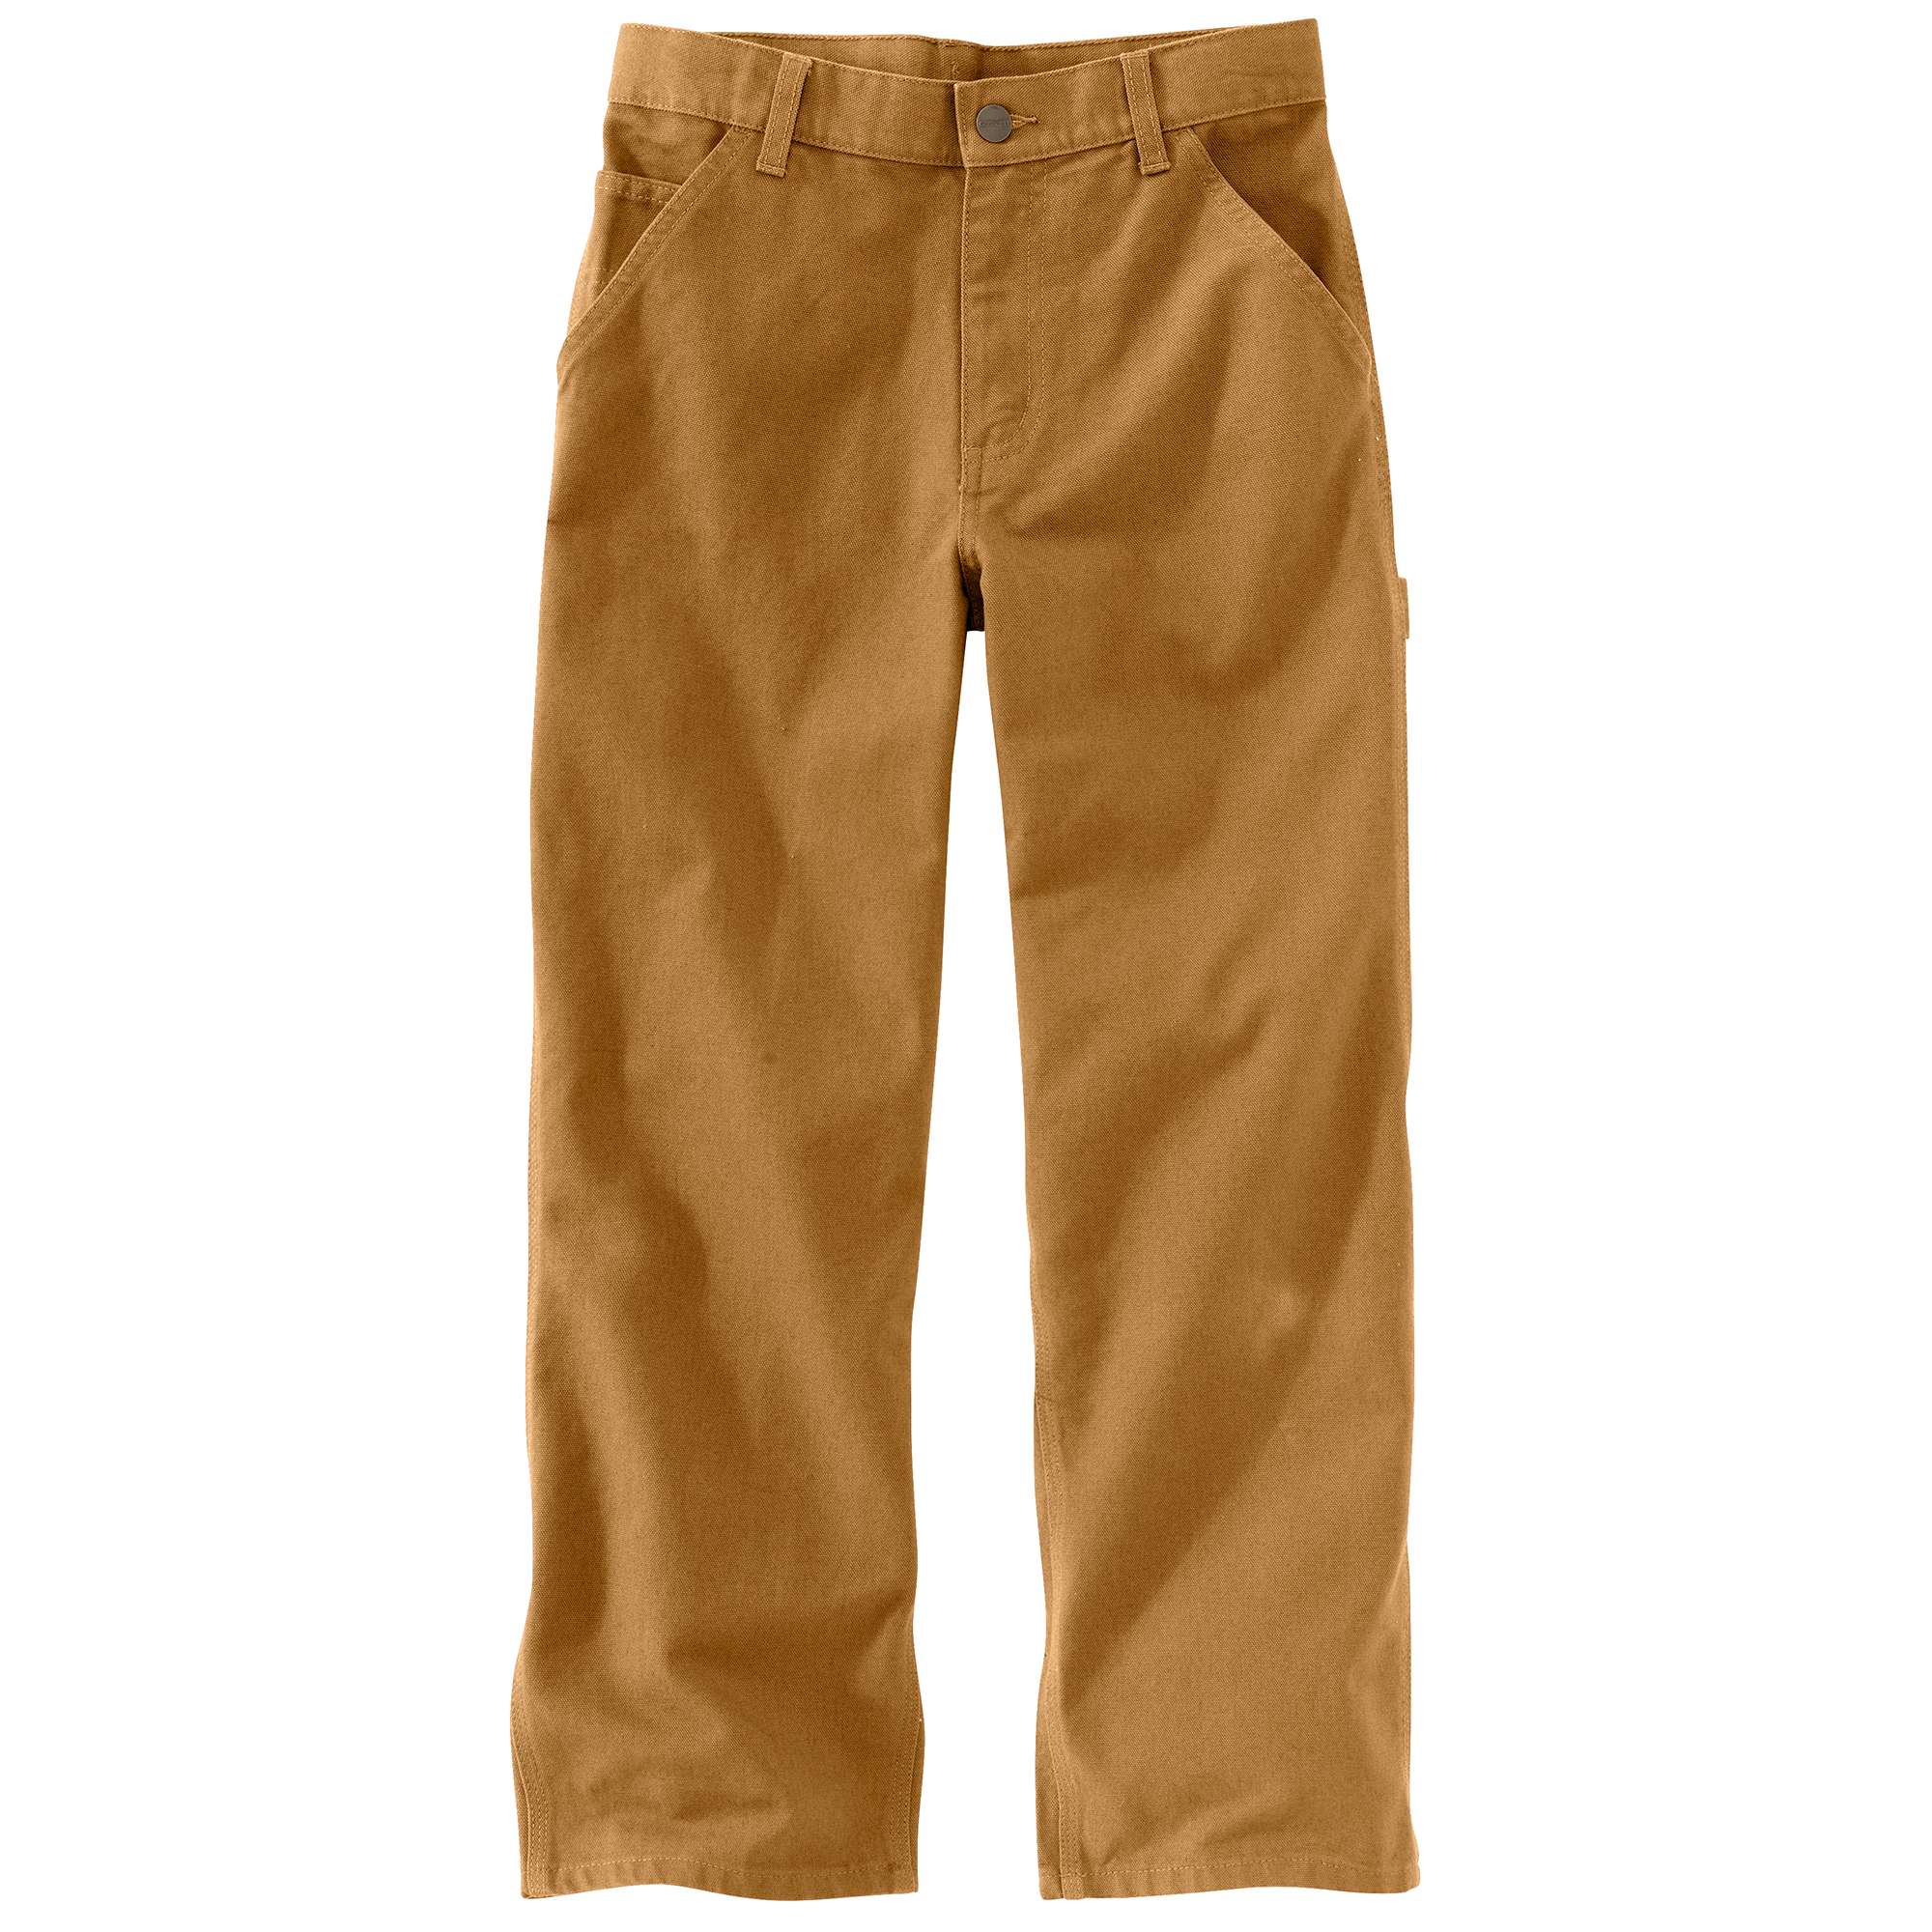 size 16 boys pants